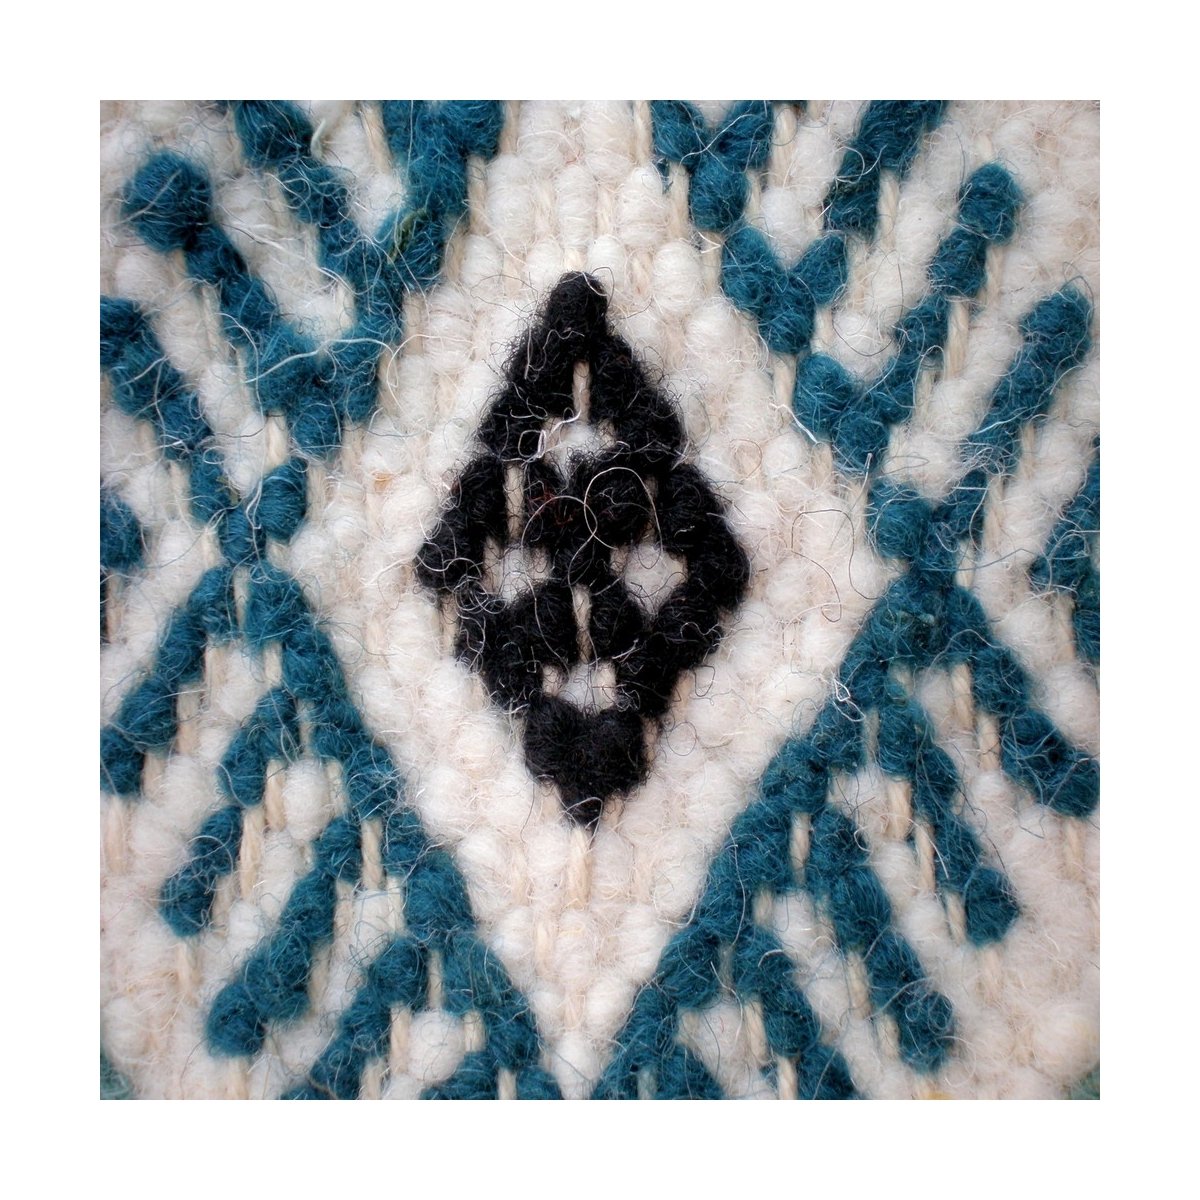 Berber tapijt Groot Tapijt Margoum Morjane 100x200 Blauw/Wit (Handgeweven, Wol, Tunesië) Tunesisch Margoum Tapijt uit de stad Ka